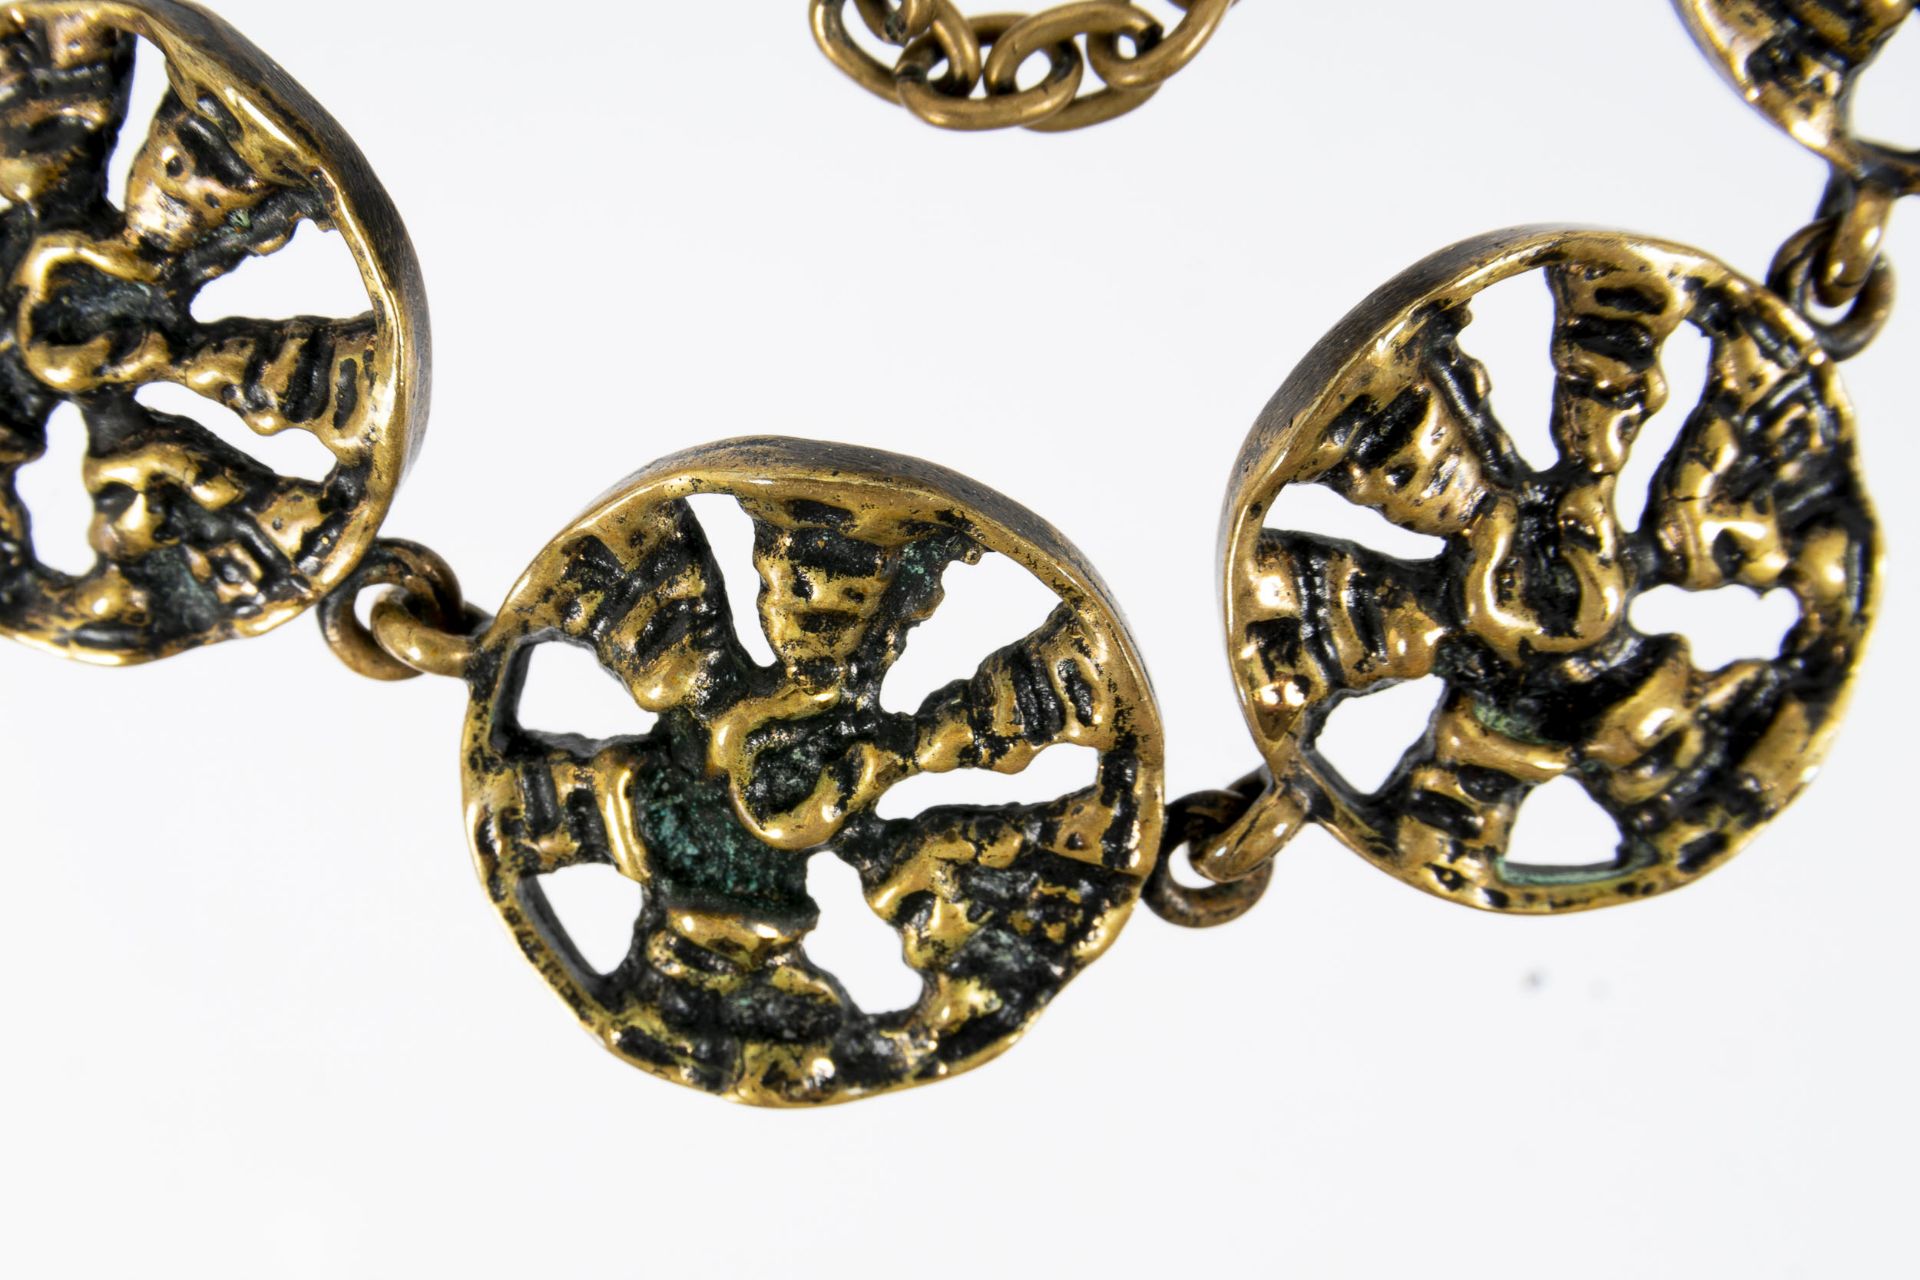 "PENTTI" SARPANEVA" 8gliedriges Designer-Gliederarmband, Bronze, mit Sicherungskettchen, Finnland d - Image 4 of 6